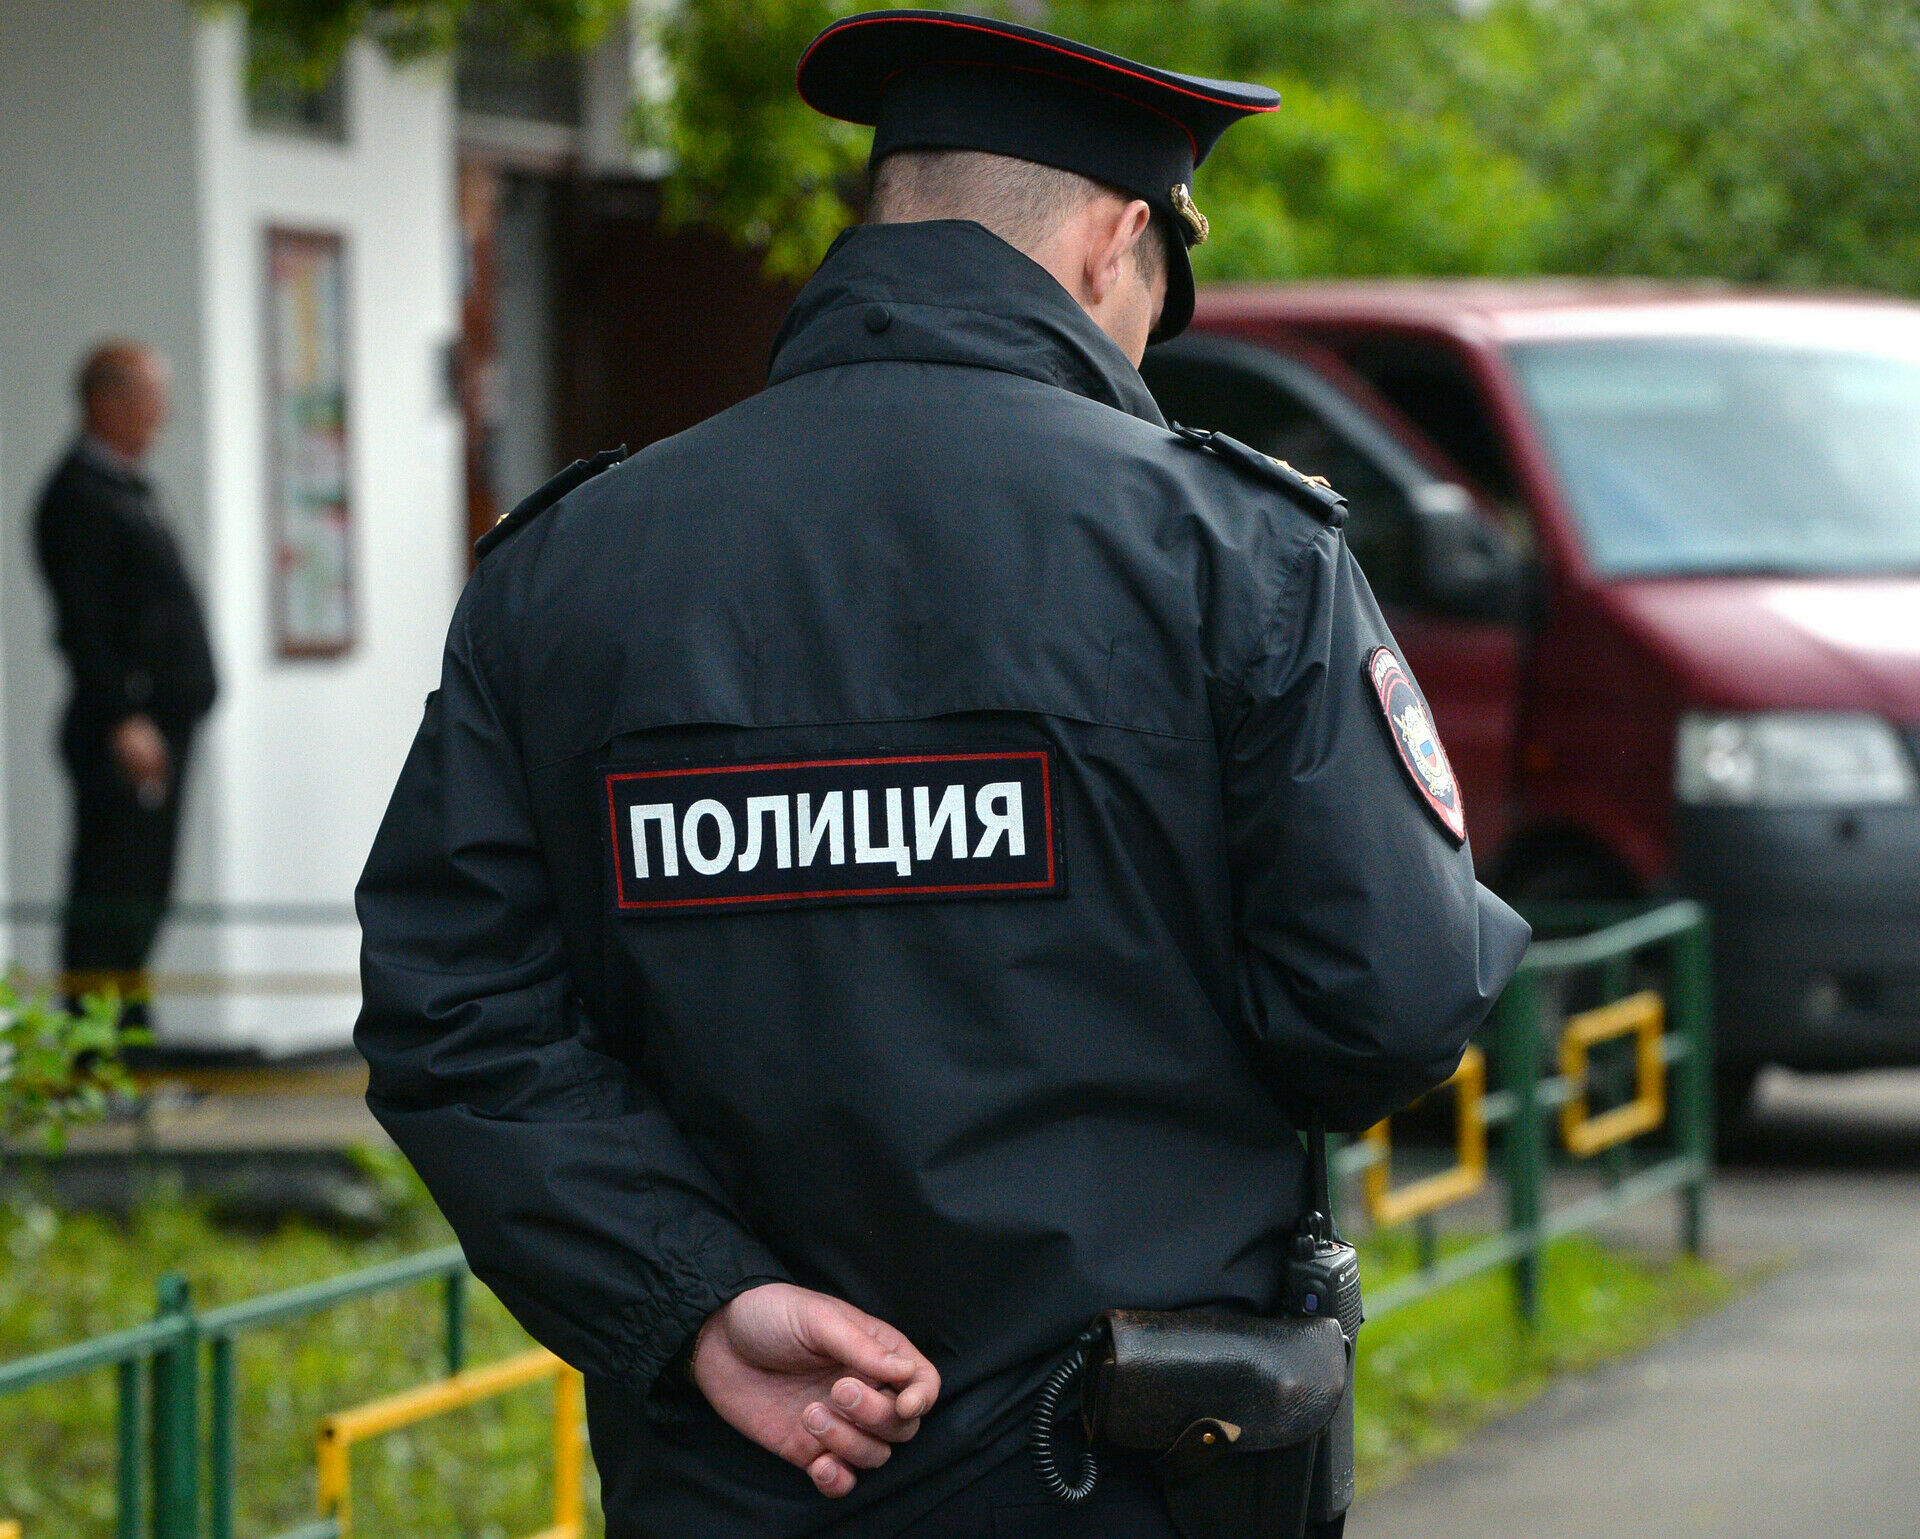 Аферисты в Москве, прикинувшись полицейскими, похитили у безработного 3,5 млн рублей